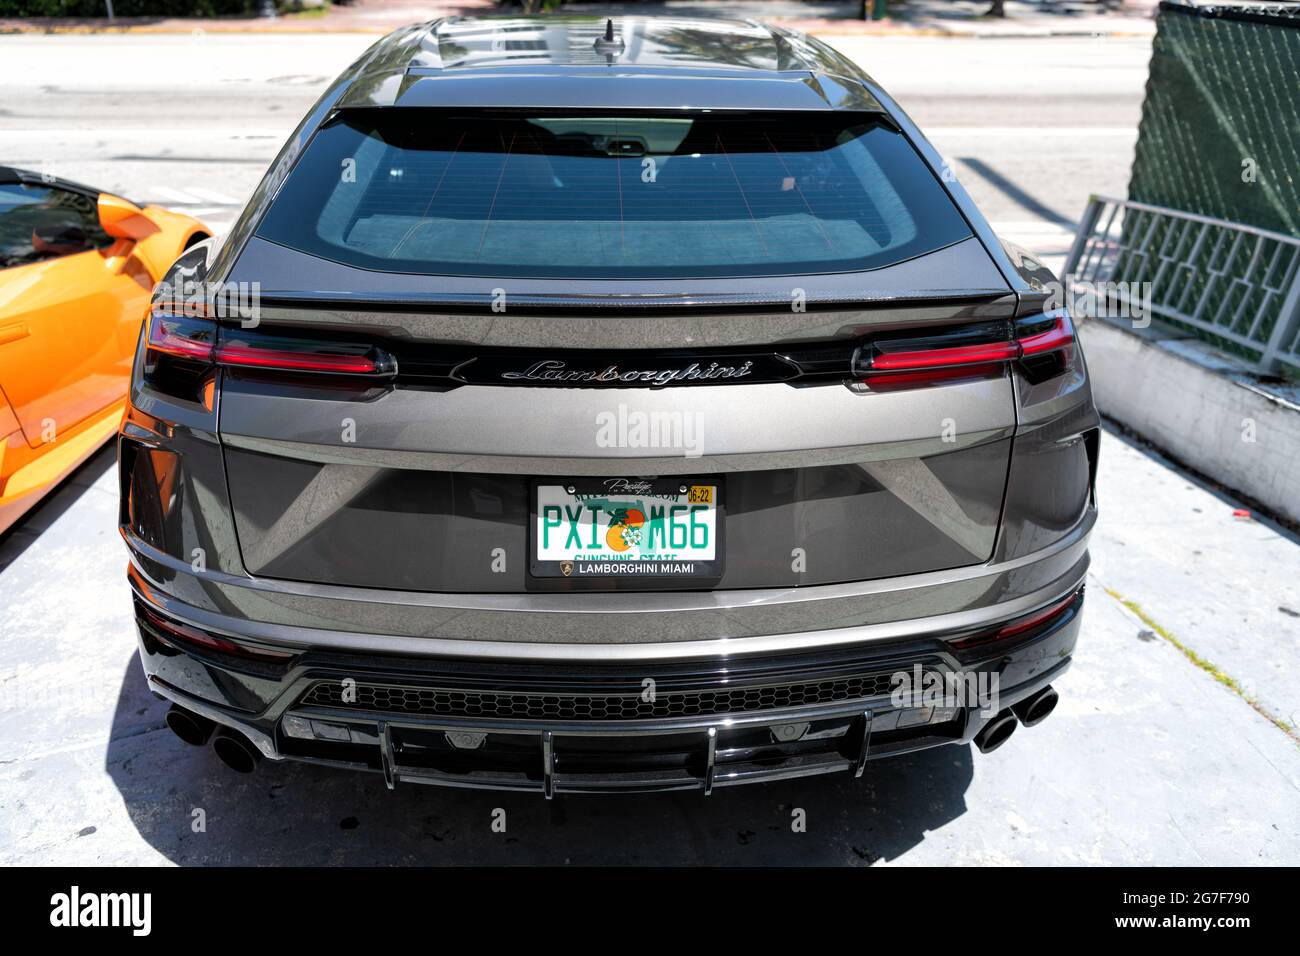 Los Angeles, California USA - April 14, 2021: black Lamborghini Urus suv  car parked in LA. back view Stock Photo - Alamy